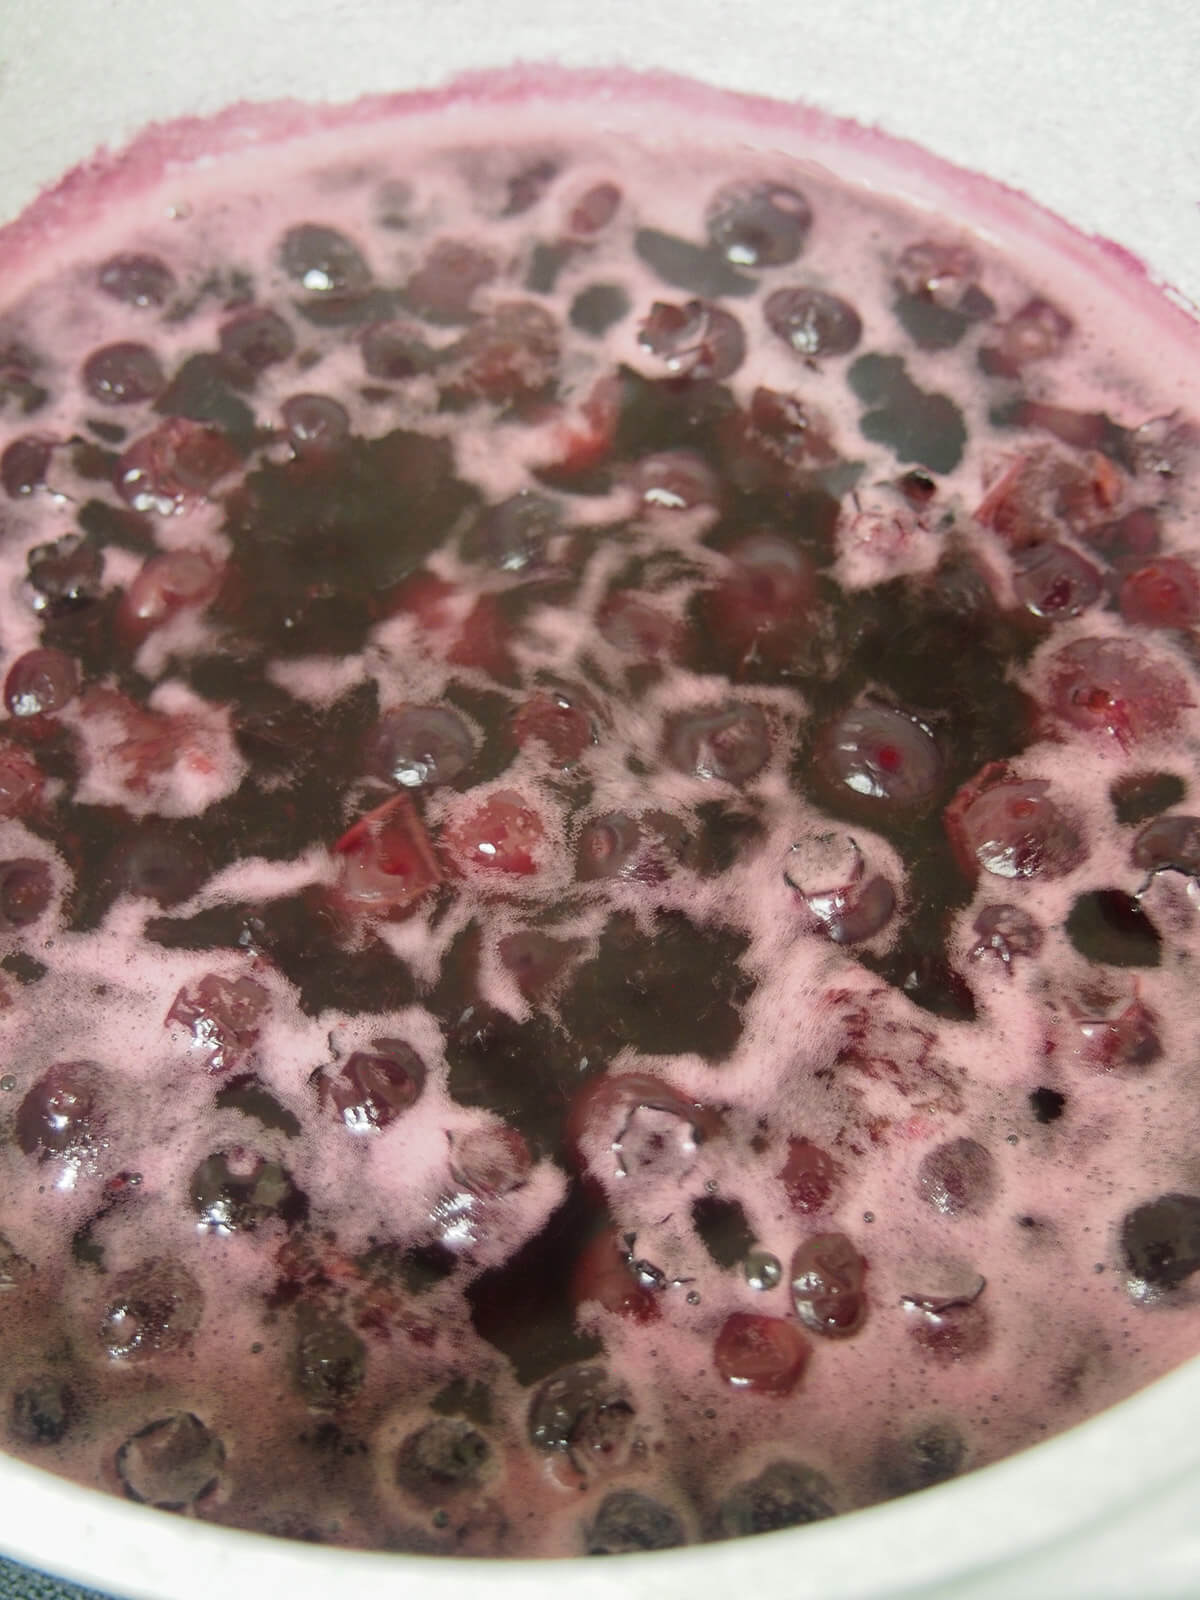 blueberries simmering in water